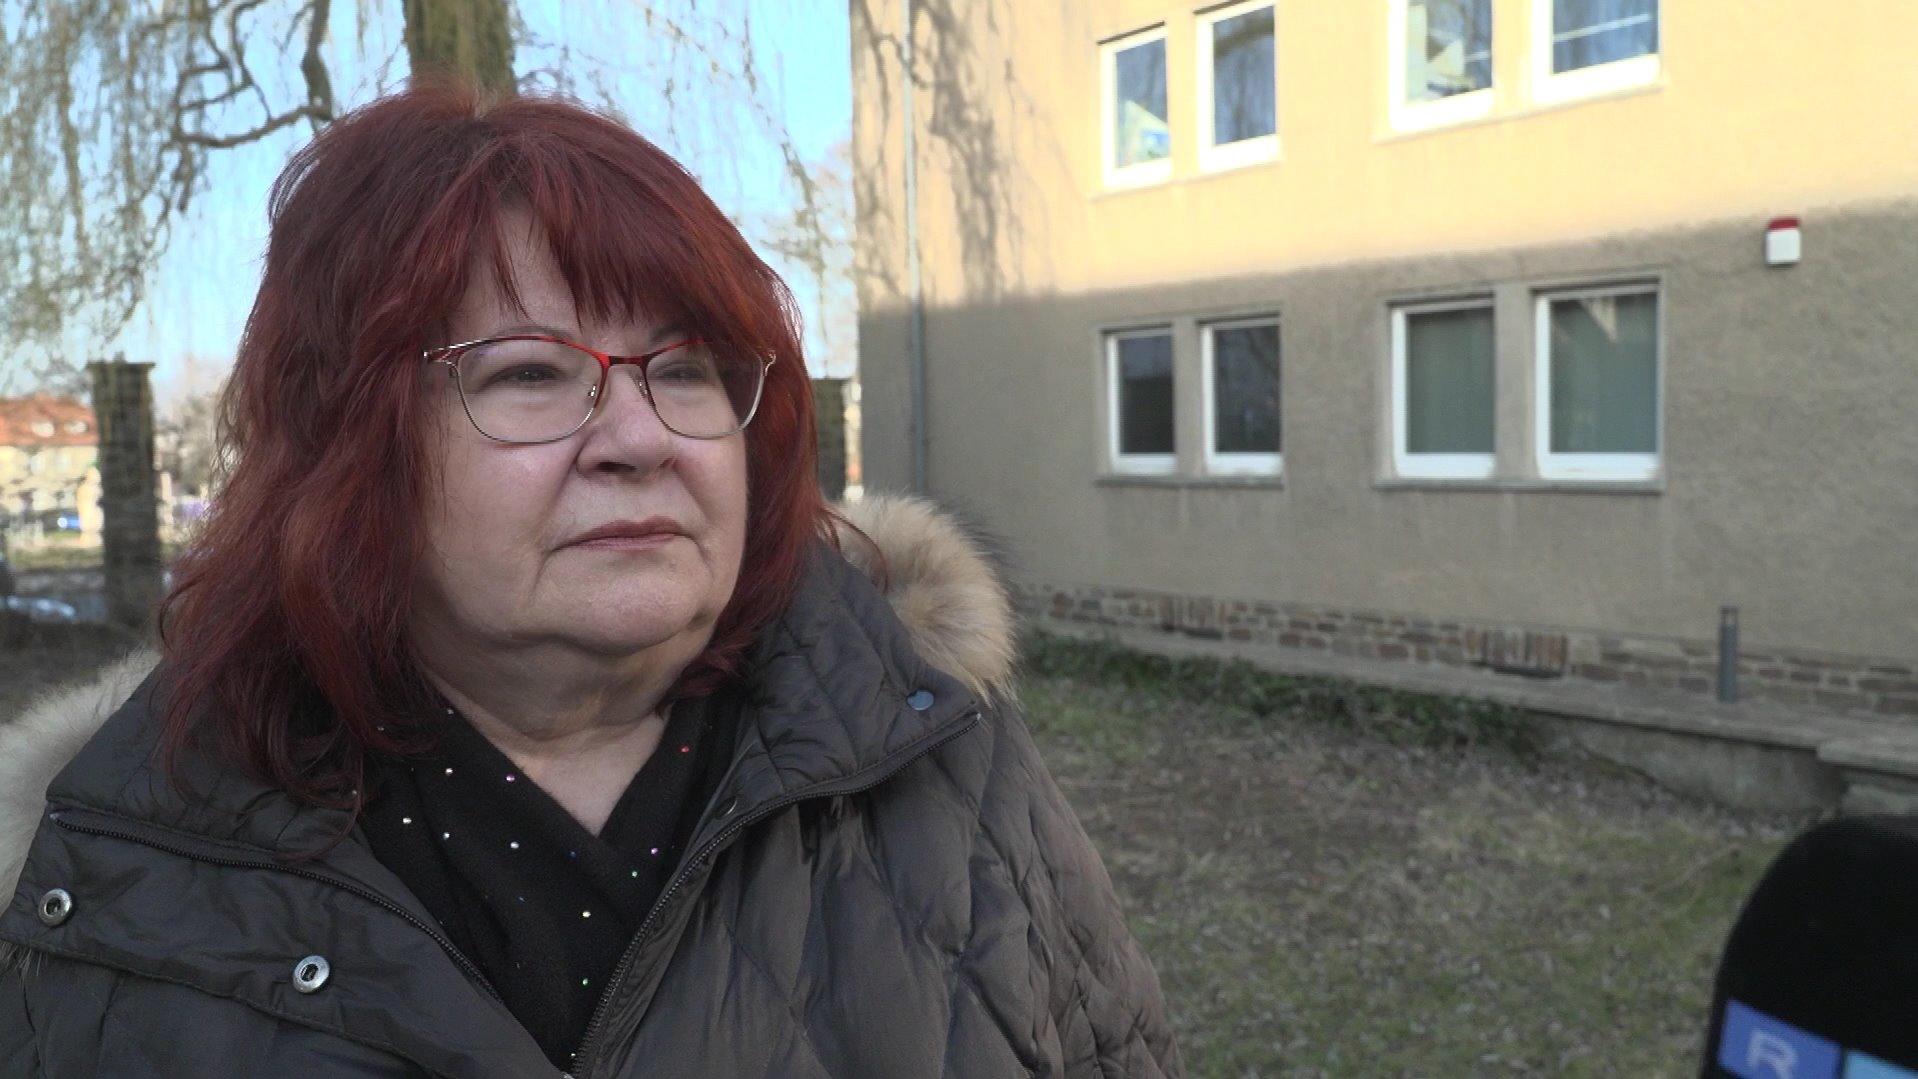 Opferanwältin Kerstin Börner sprach im RTL-Interview über das Leid des Jungen.